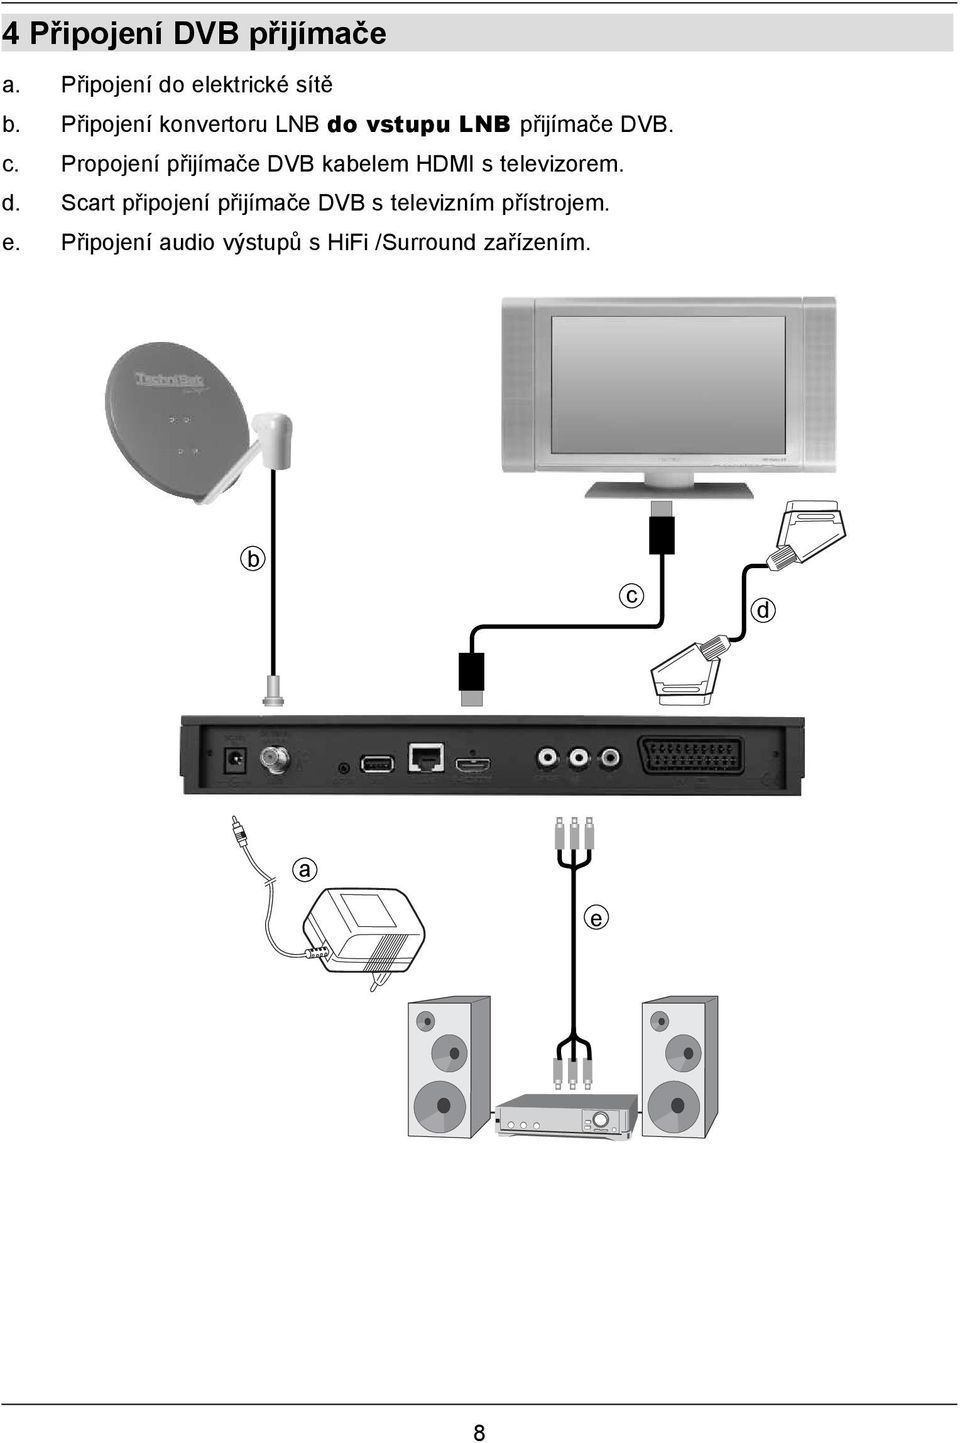 Propojení přijímače DVB kabelem HDMI s televizorem. d.